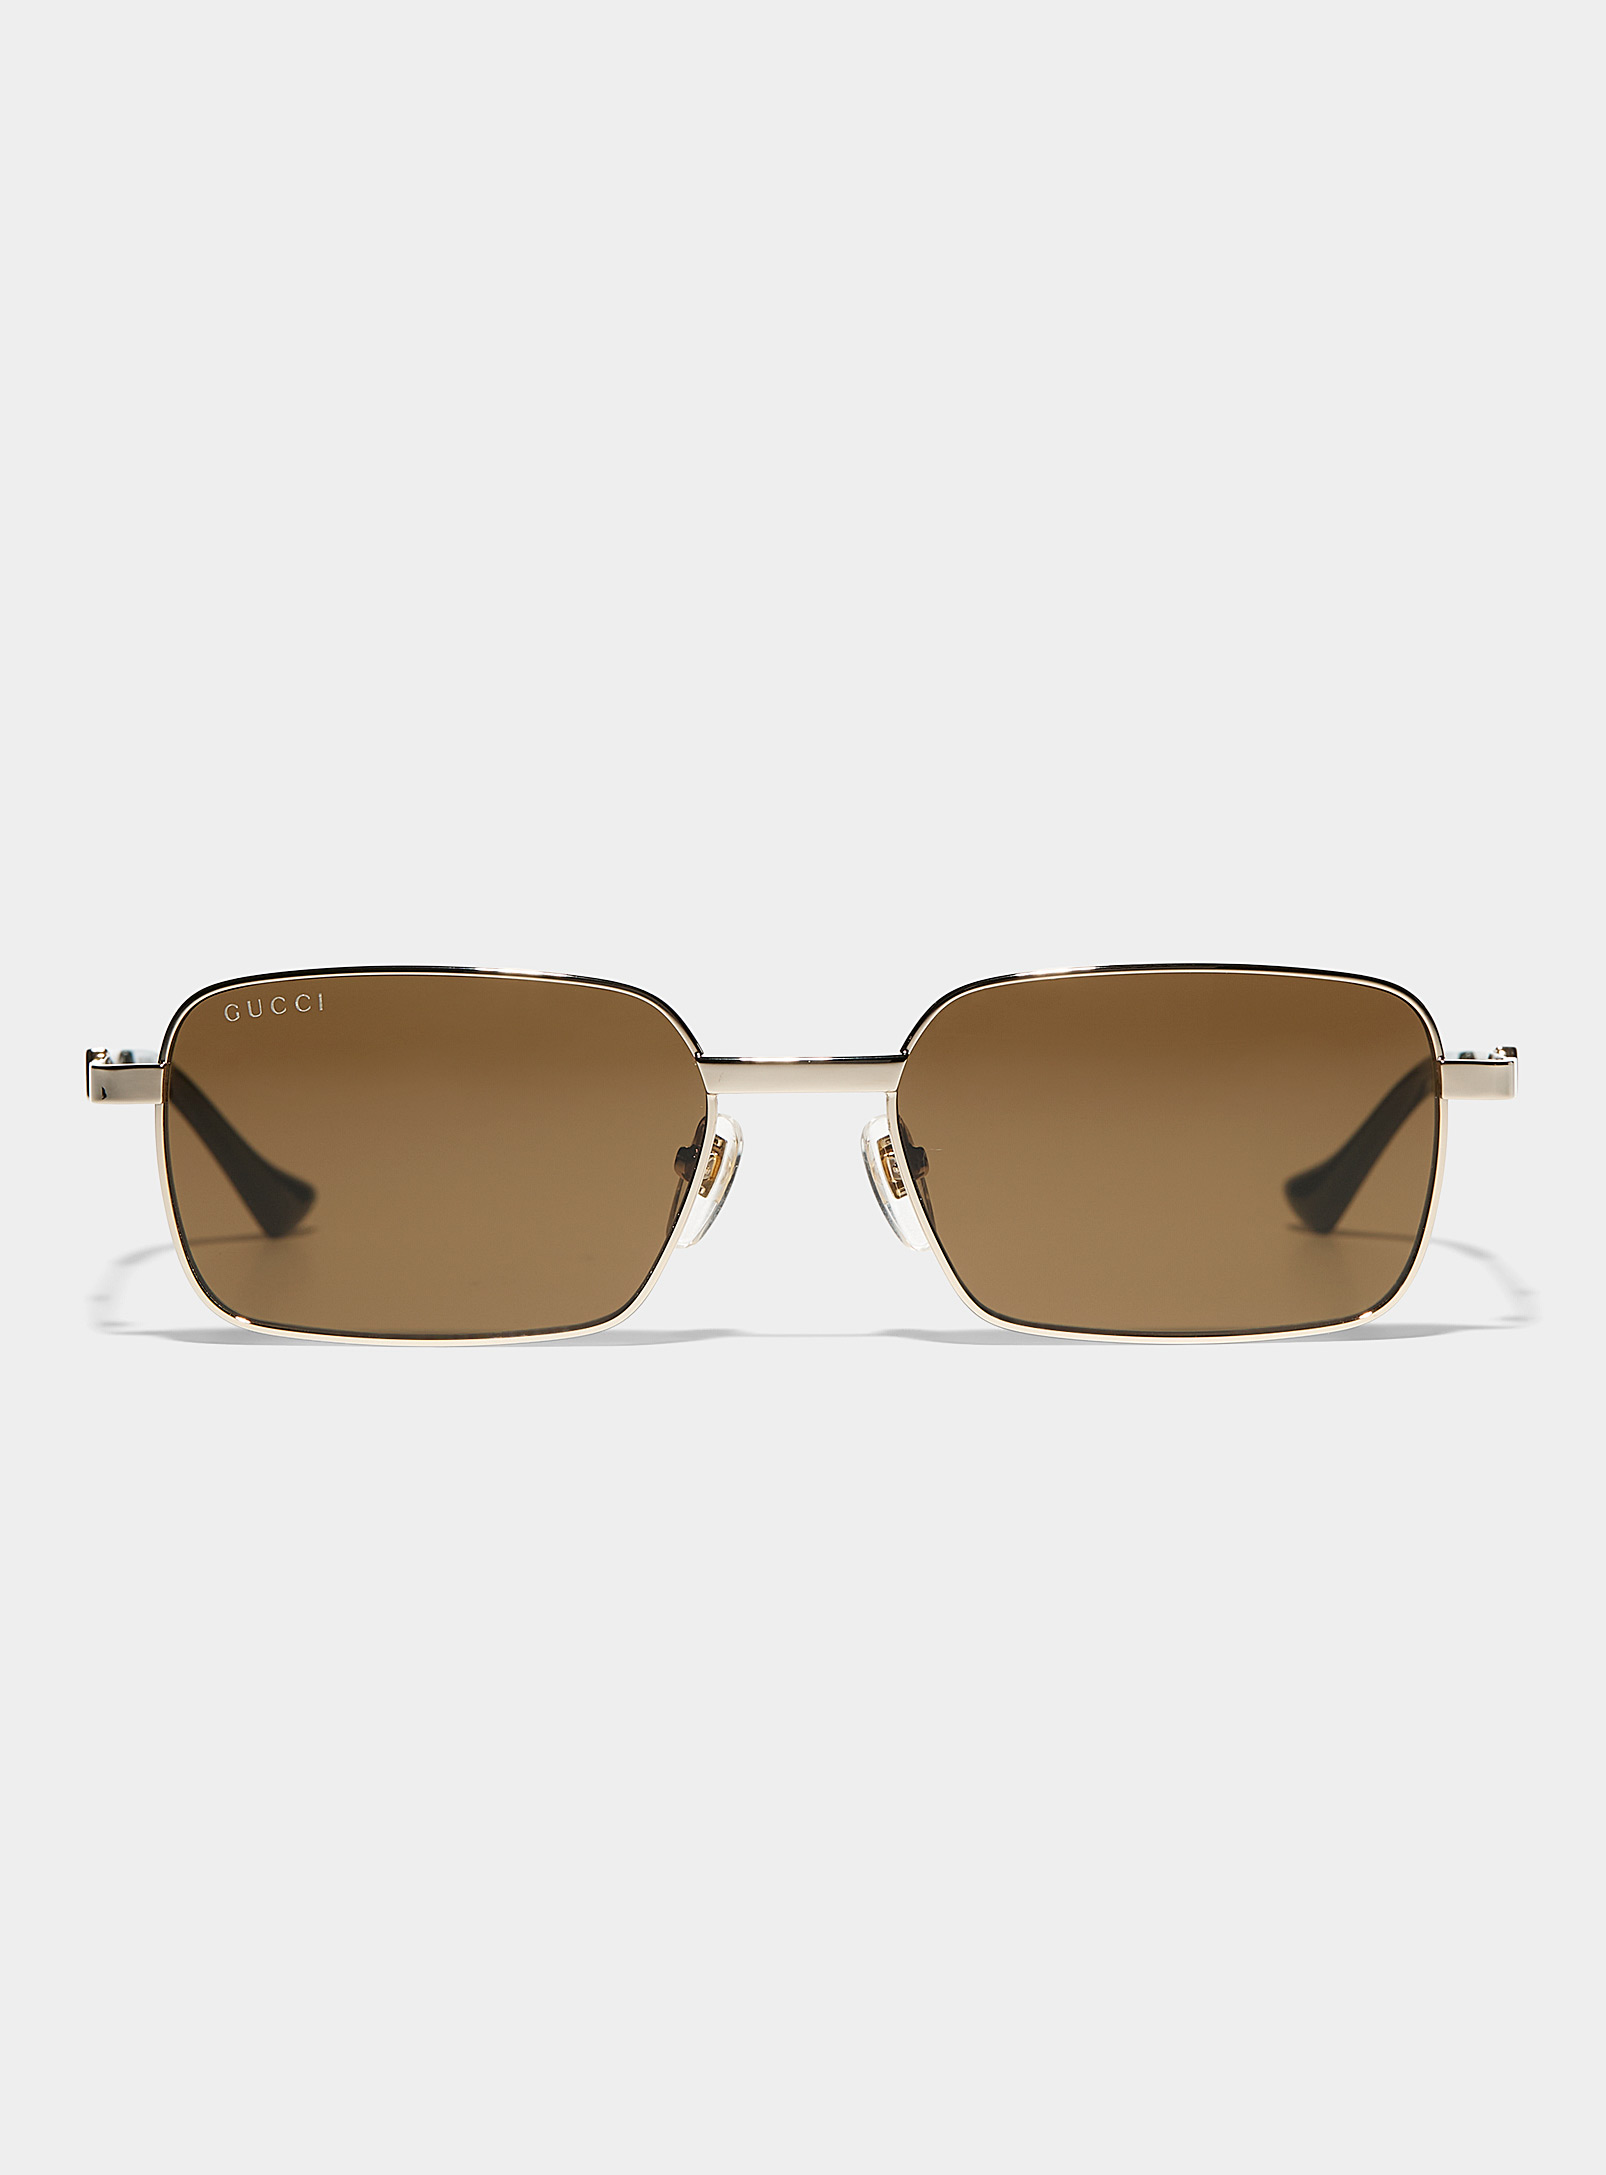 Gucci - Les lunettes de soleil métalliques profilées